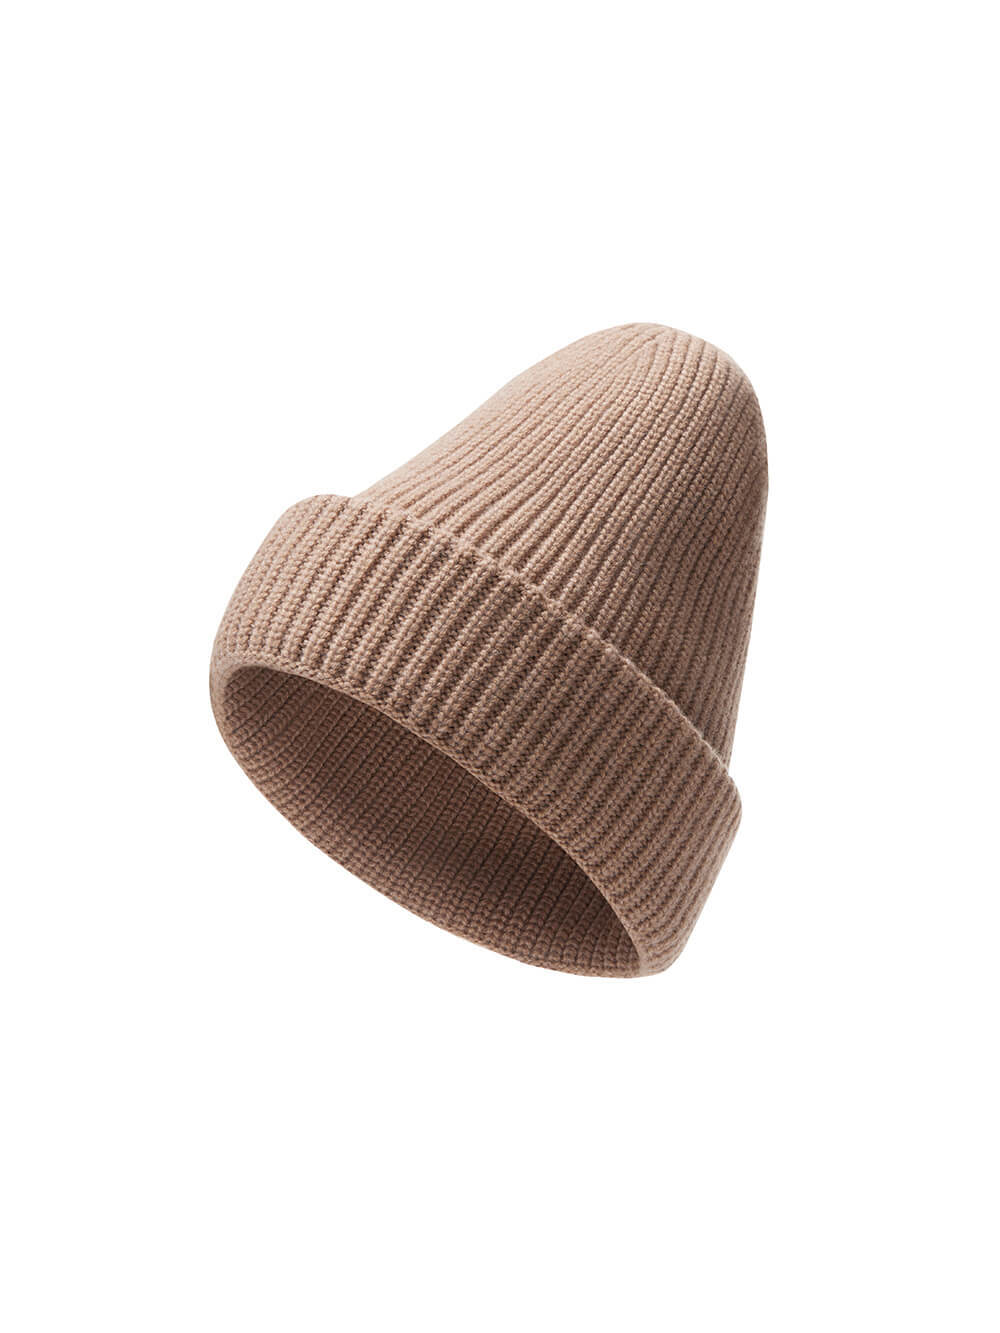 Женская шапка бежевого цвета из шерсти и кашемира - фото 1